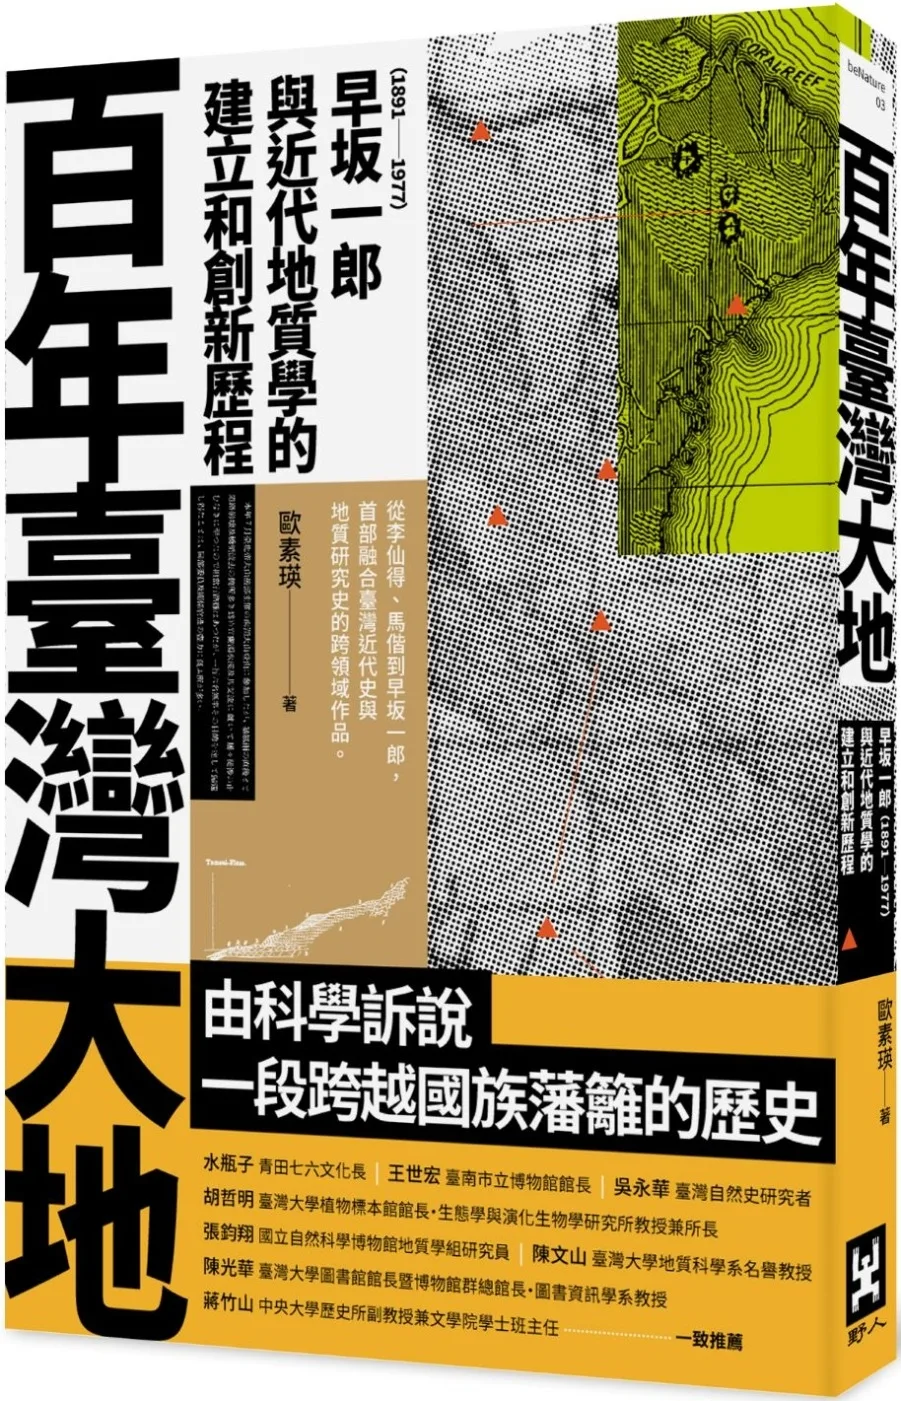 百年臺灣大地：早?一郎（1891-1977）與近代地質學的建立和創新歷程